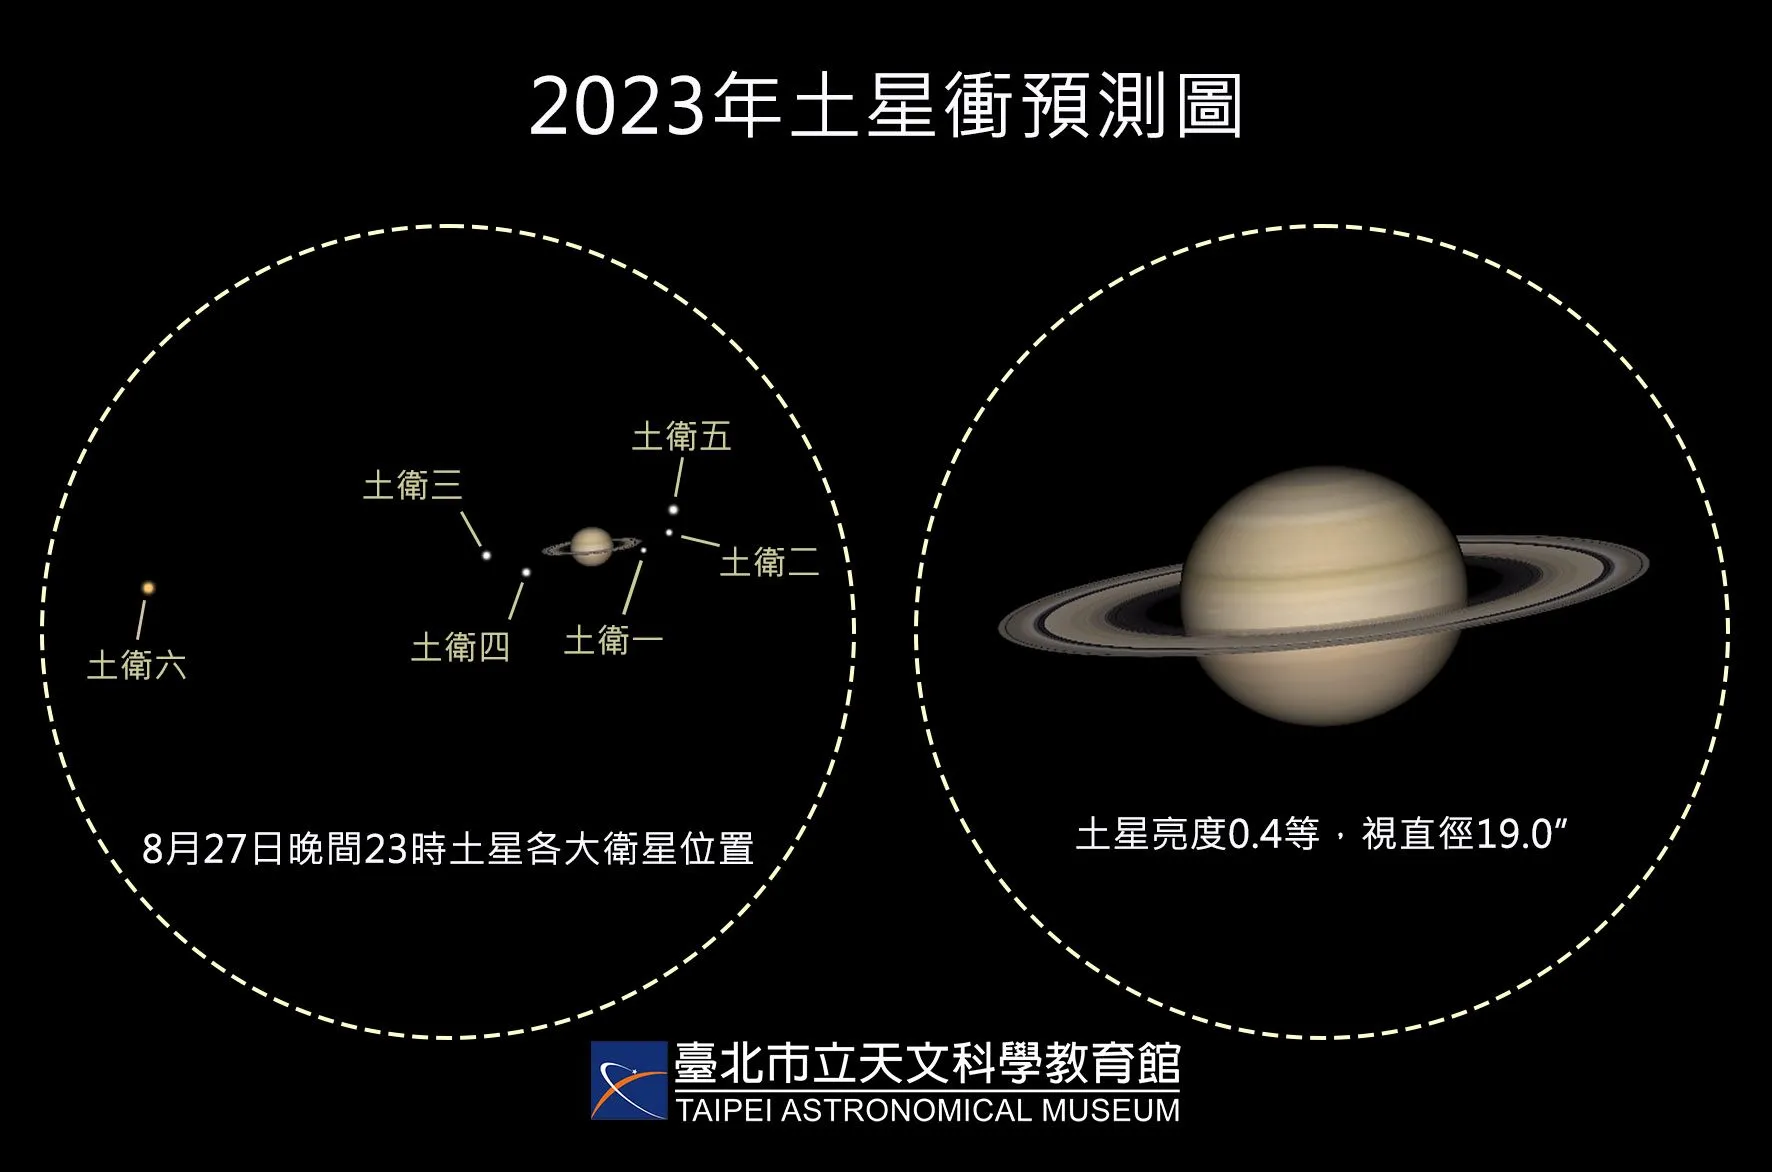 2023年8月27日的土星冲天象示意图，只需使用小型望远镜，就可以饱览美丽的土星环和较亮的卫星。